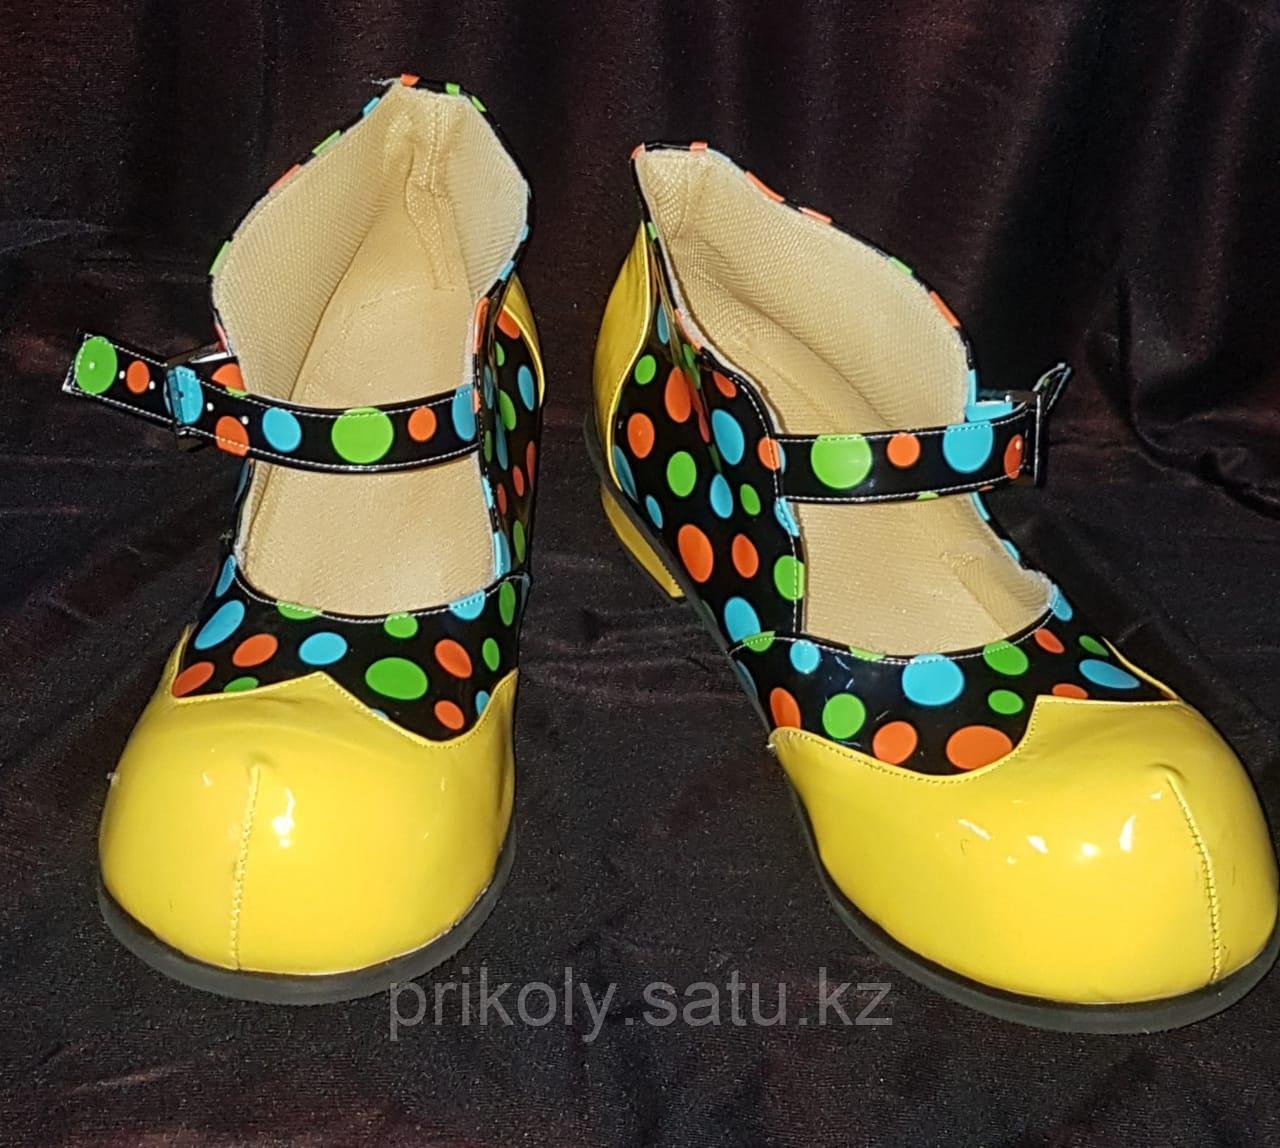 Обувь для Клоуна